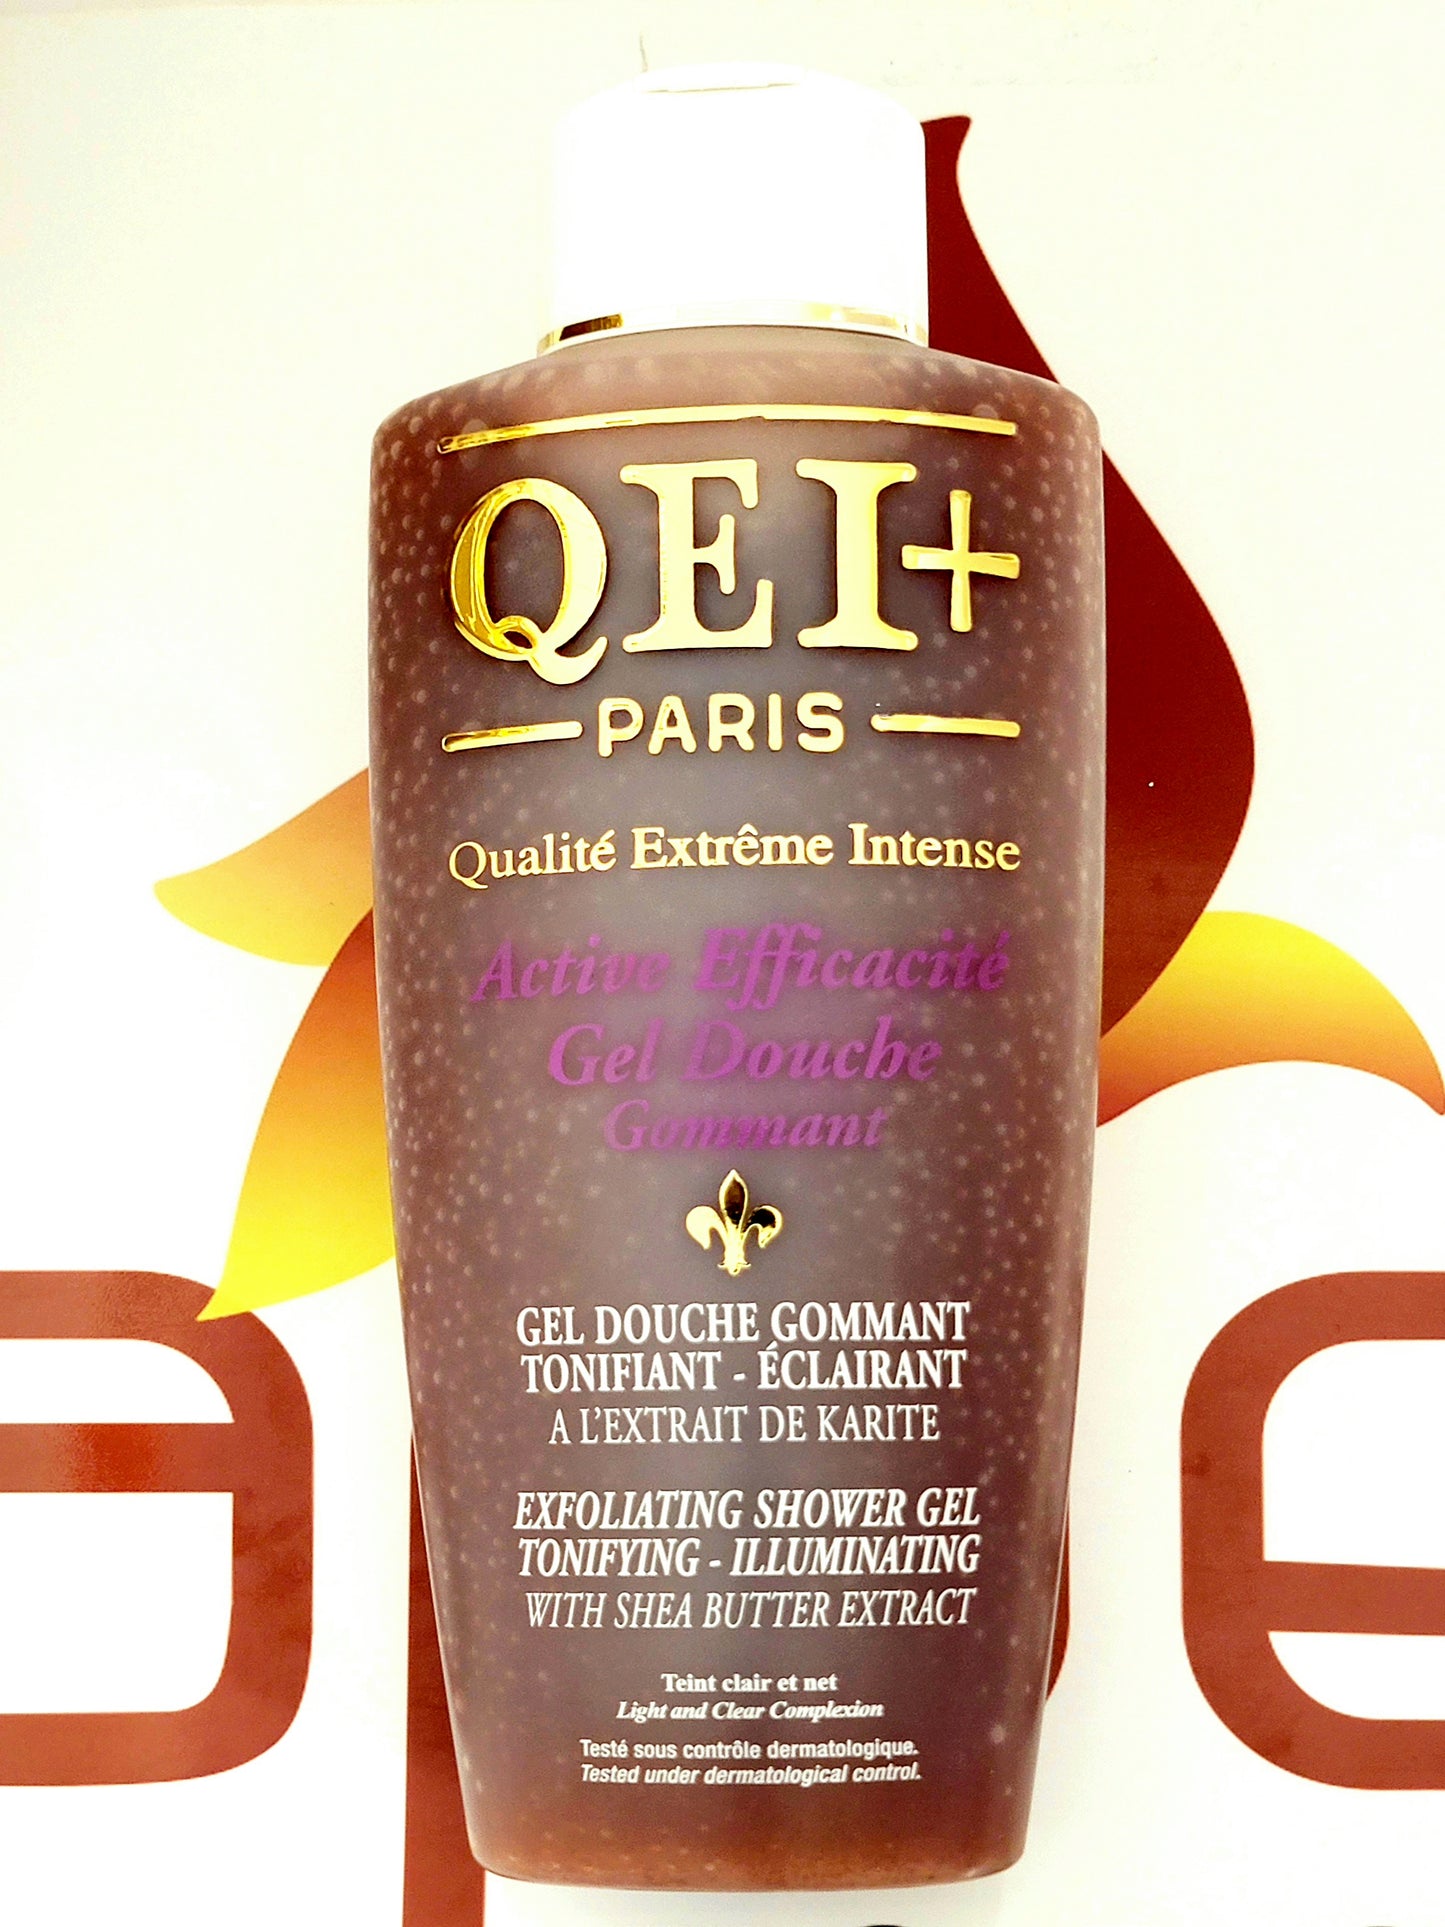 QEI+ Paris Active Efficacite Exfoliating Shower Gel Tonifying-Illuminating 1000ml